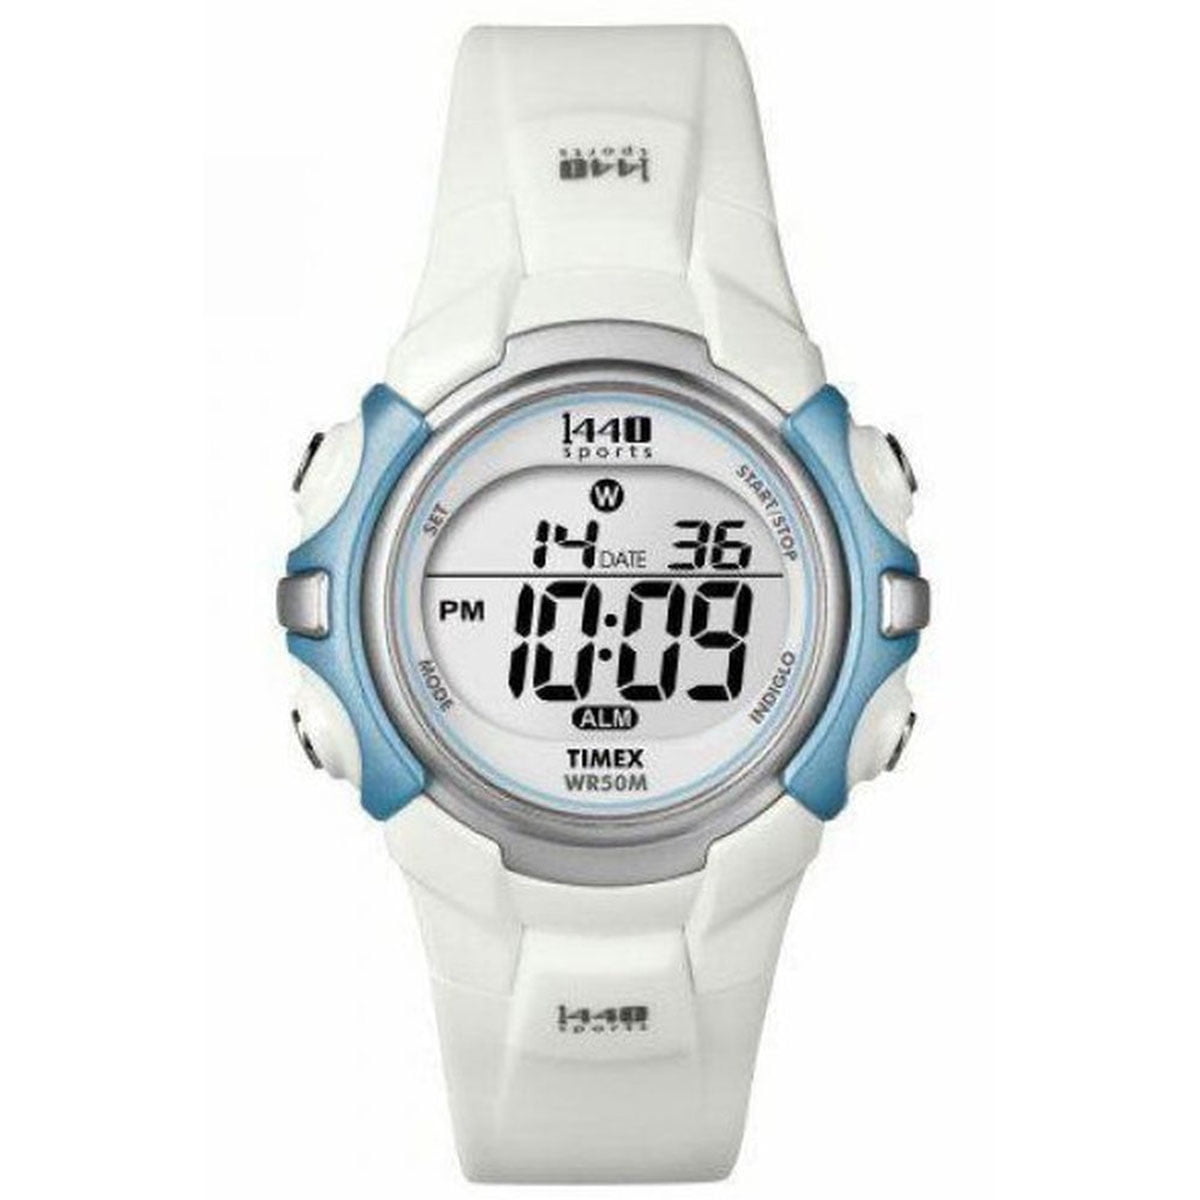 Timex T5K436 Marathon Watch - Walmart.com